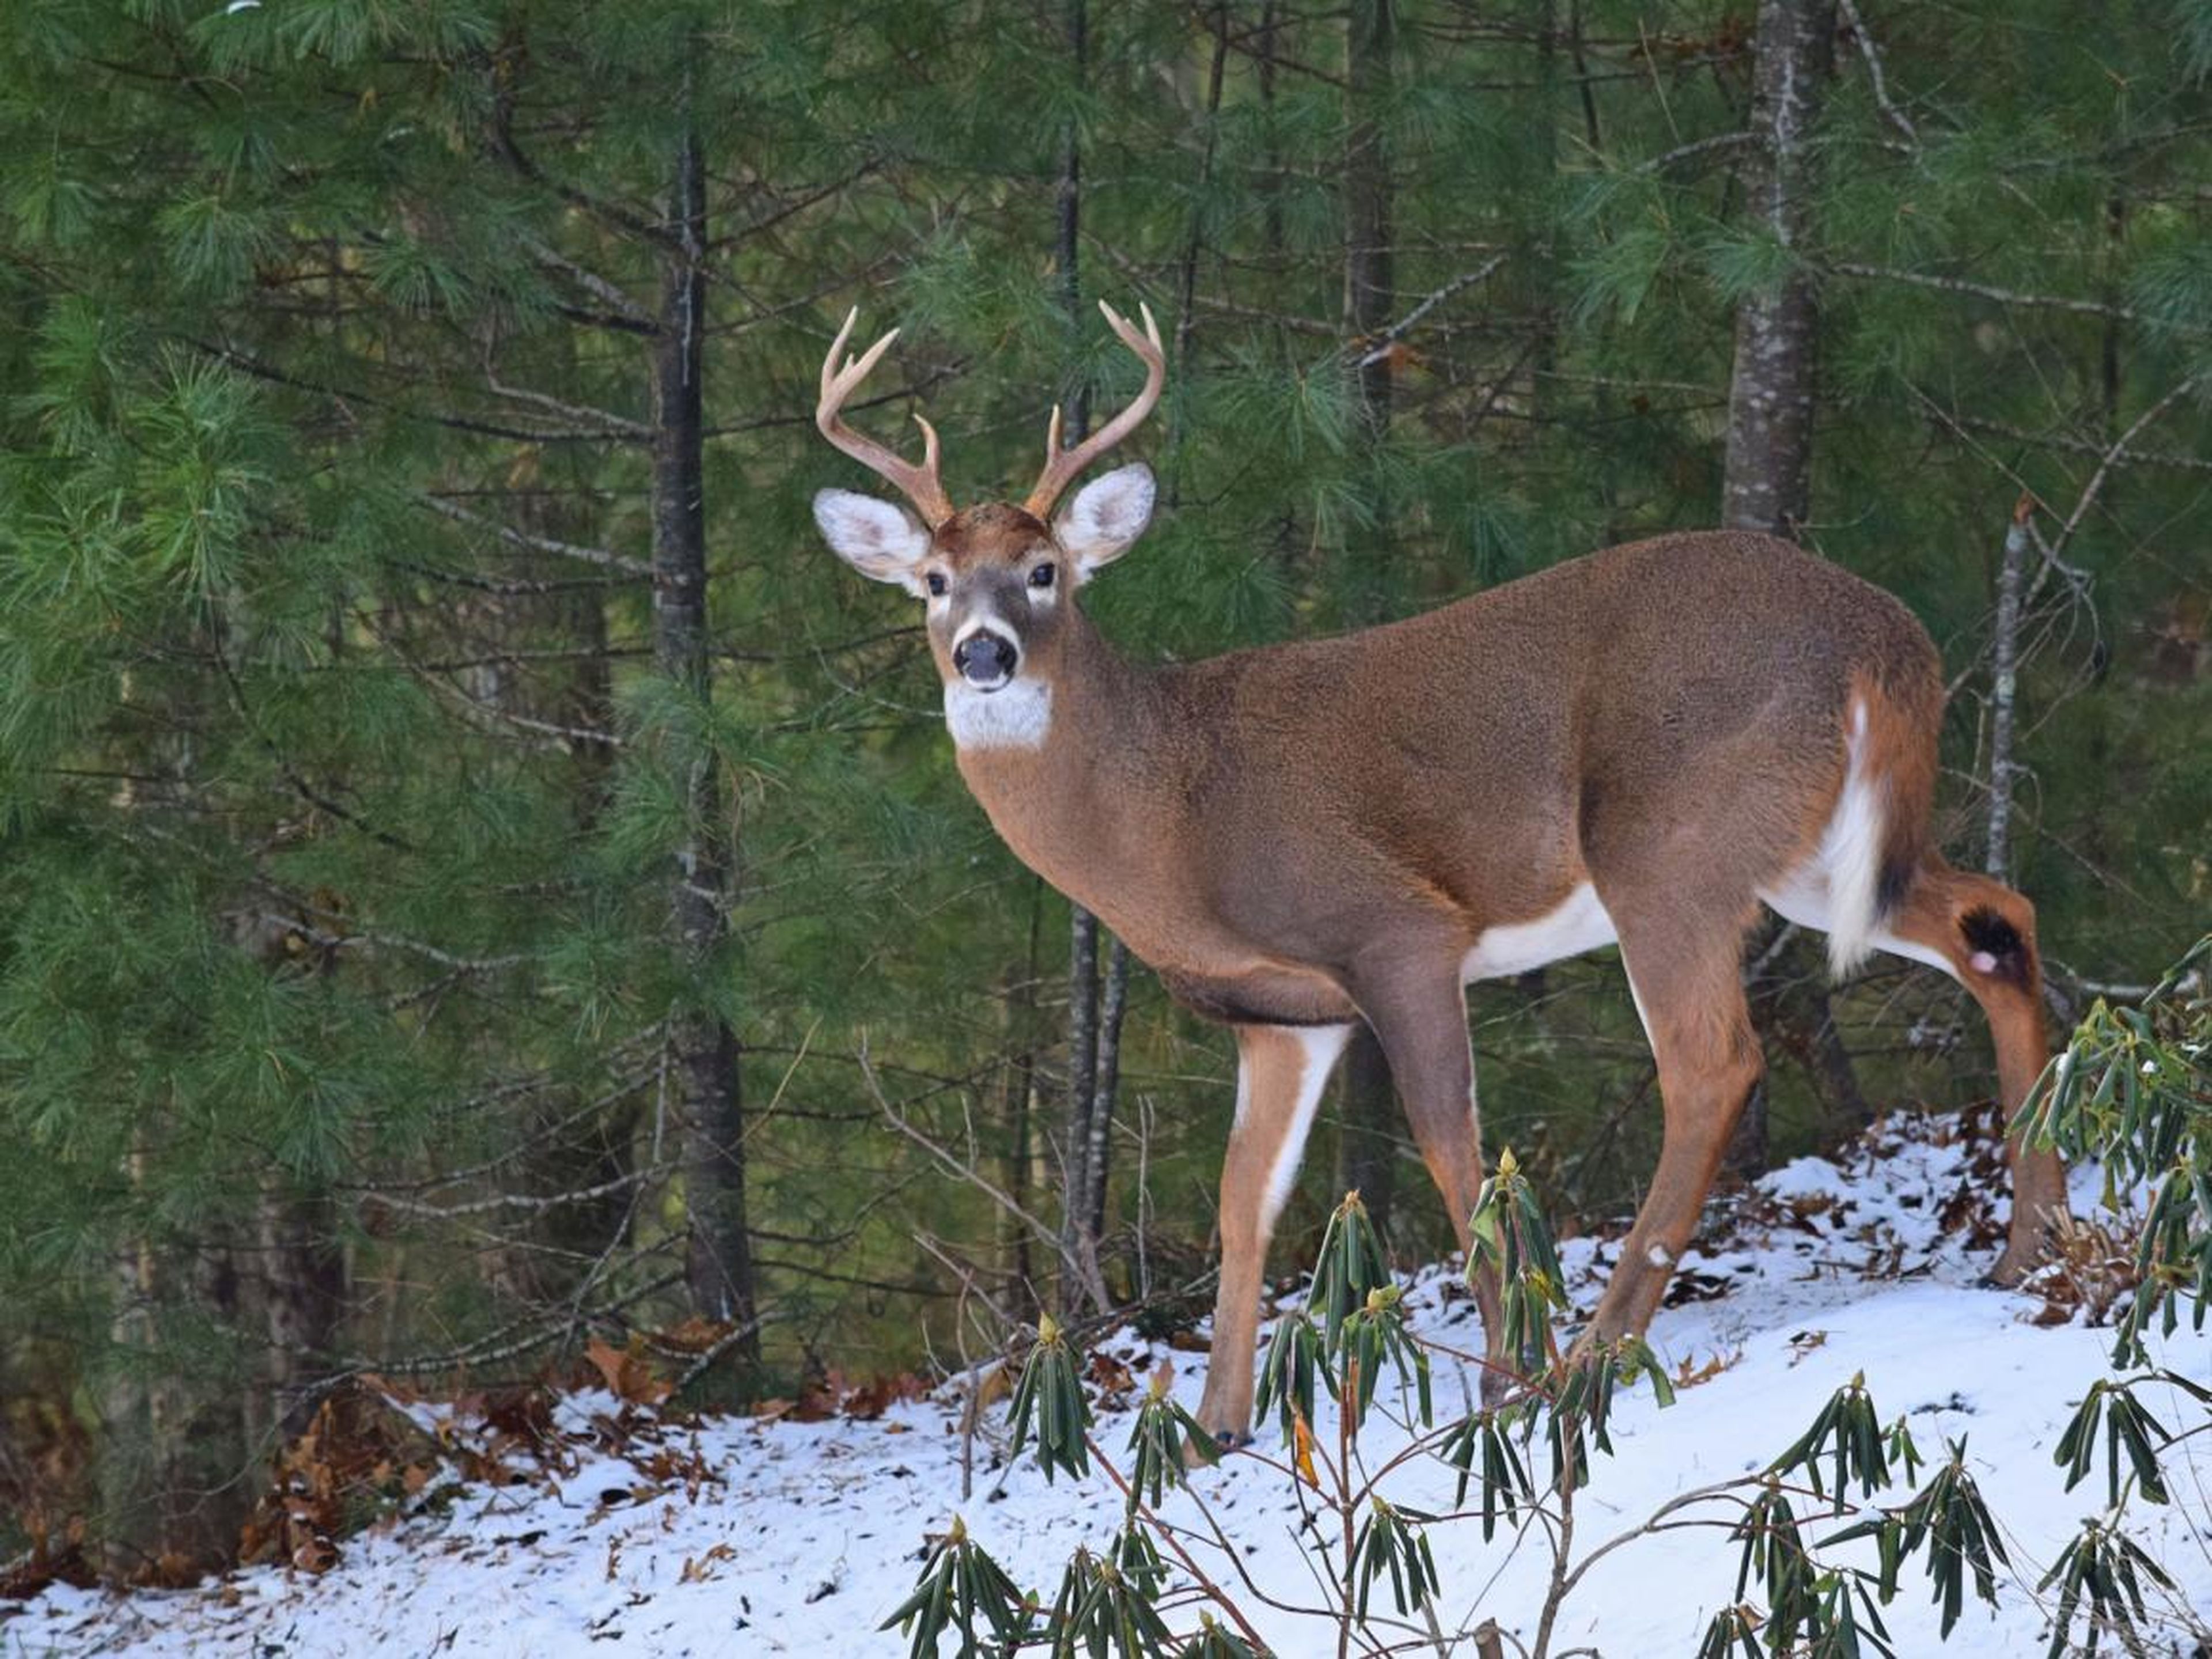 White-tailed deer, like this buck, can spread "zombie deer disease."